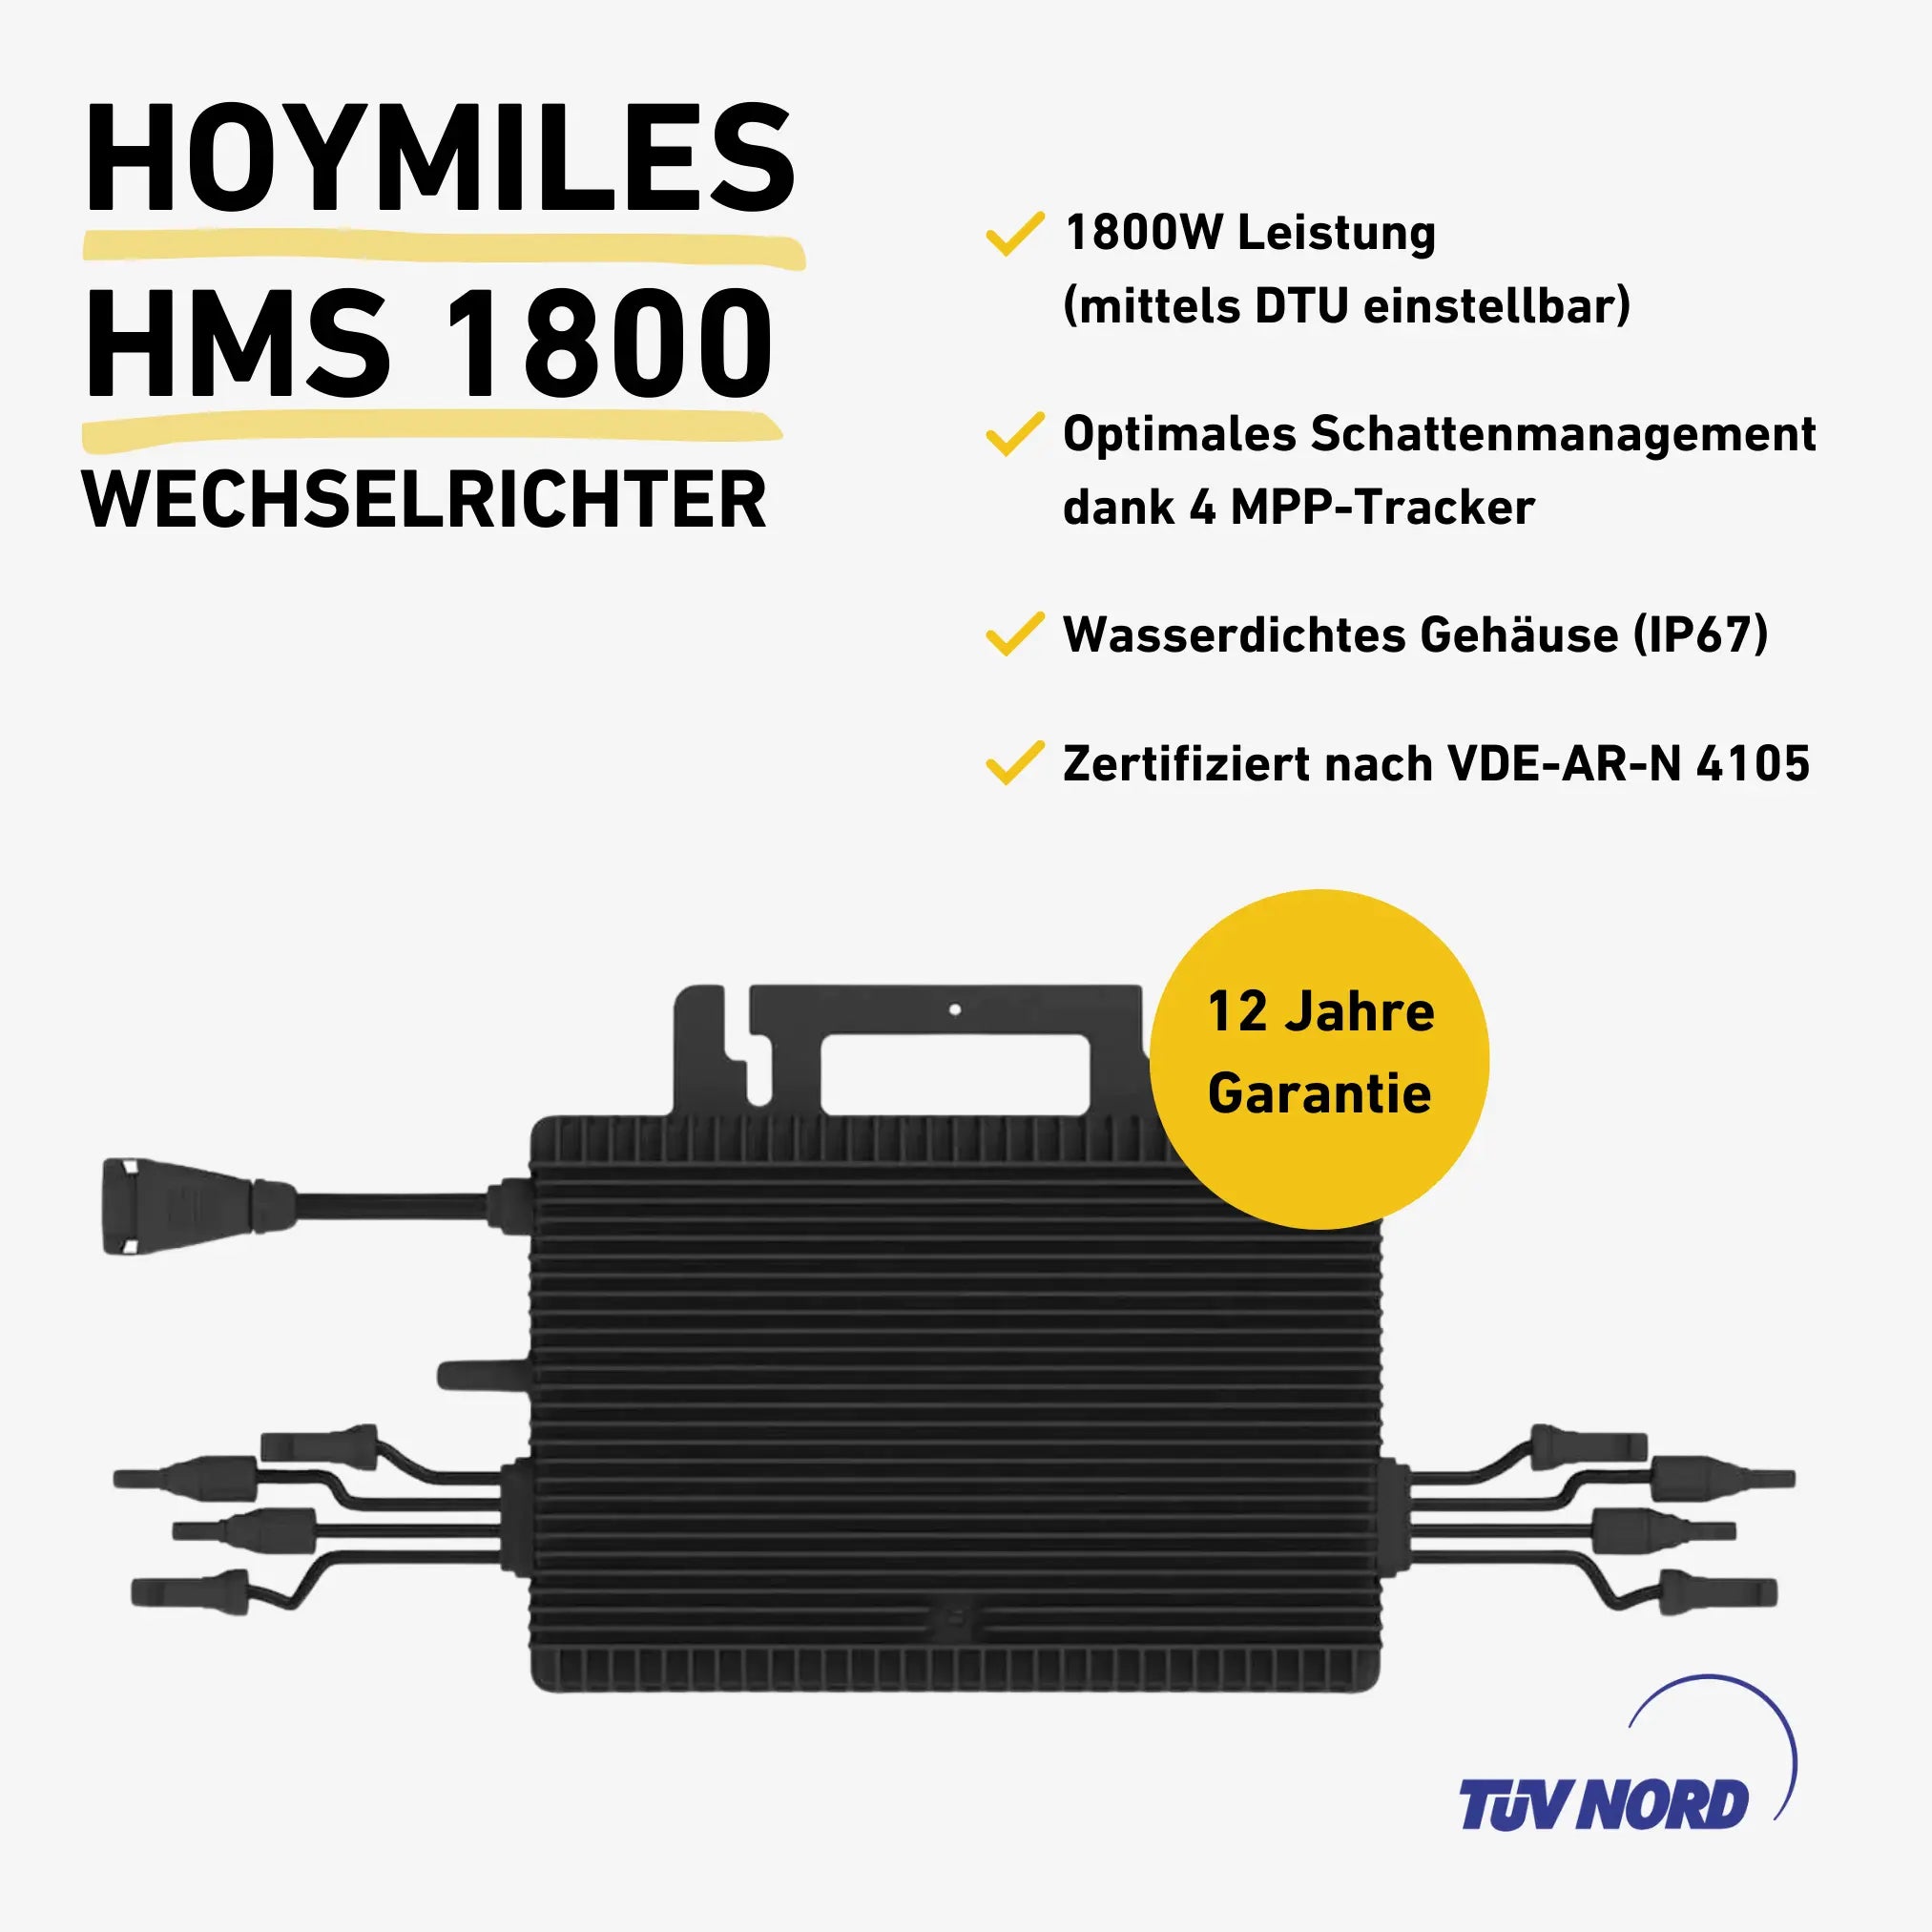 Made in Germany Balkonkraftwerk mit Wechselrichter von Hoymiles